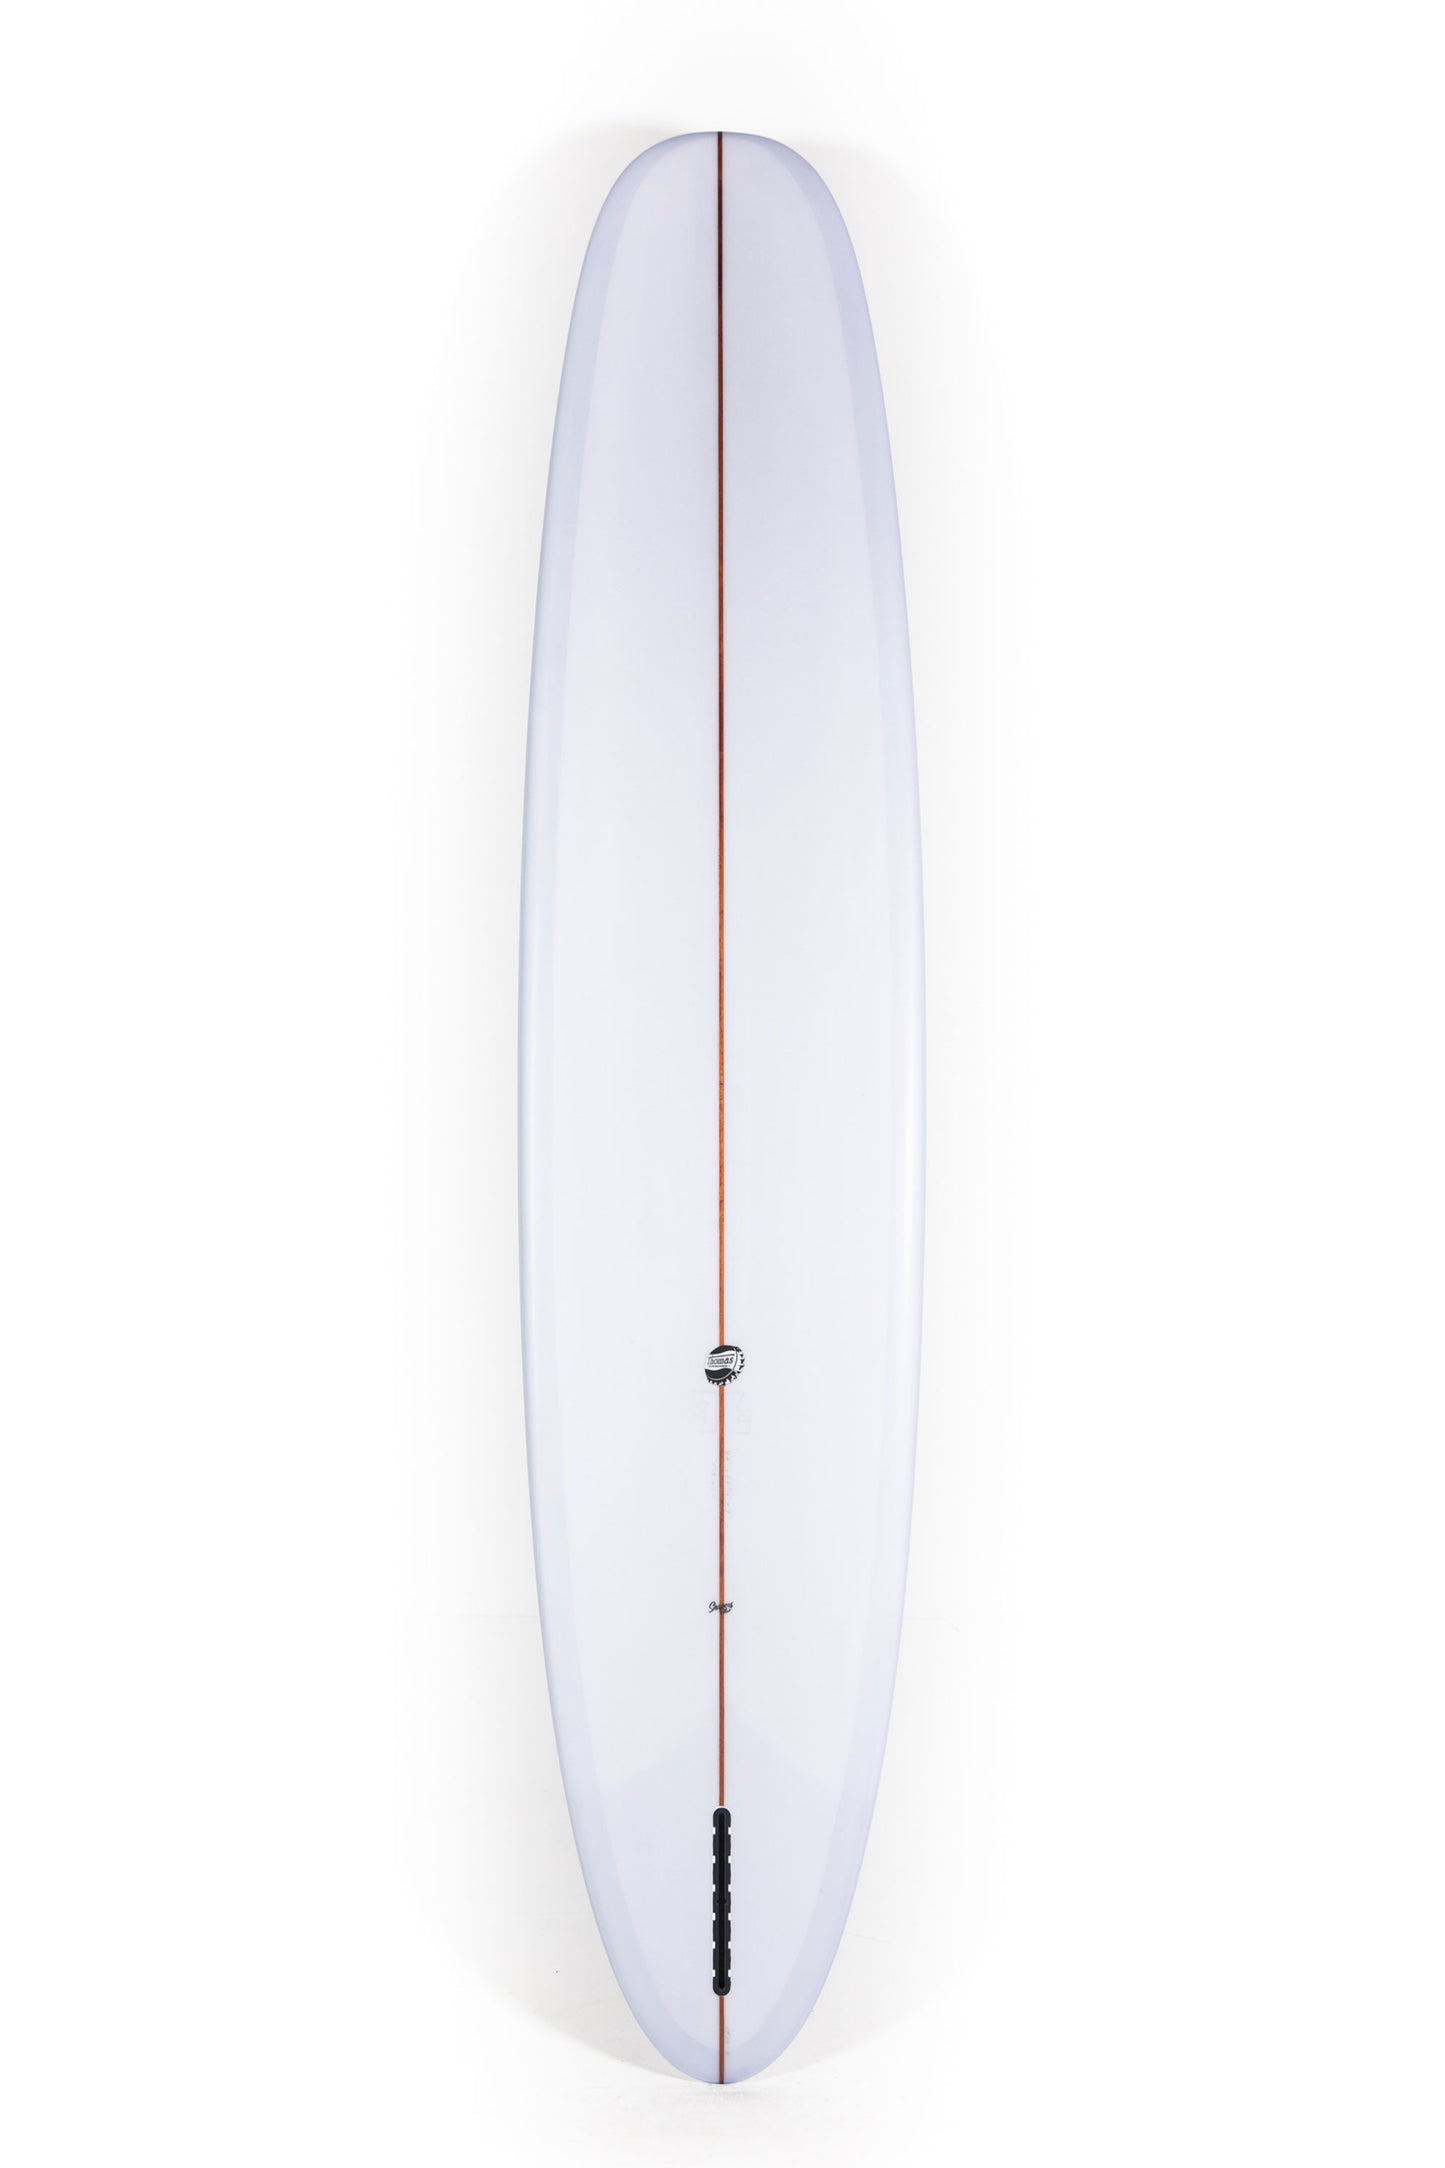 Pukas-Surf-Shop-Thomas-Bexon-Surfboards-Wizl-Thomas-Bexon-9_4_-WIZL94CEMENT